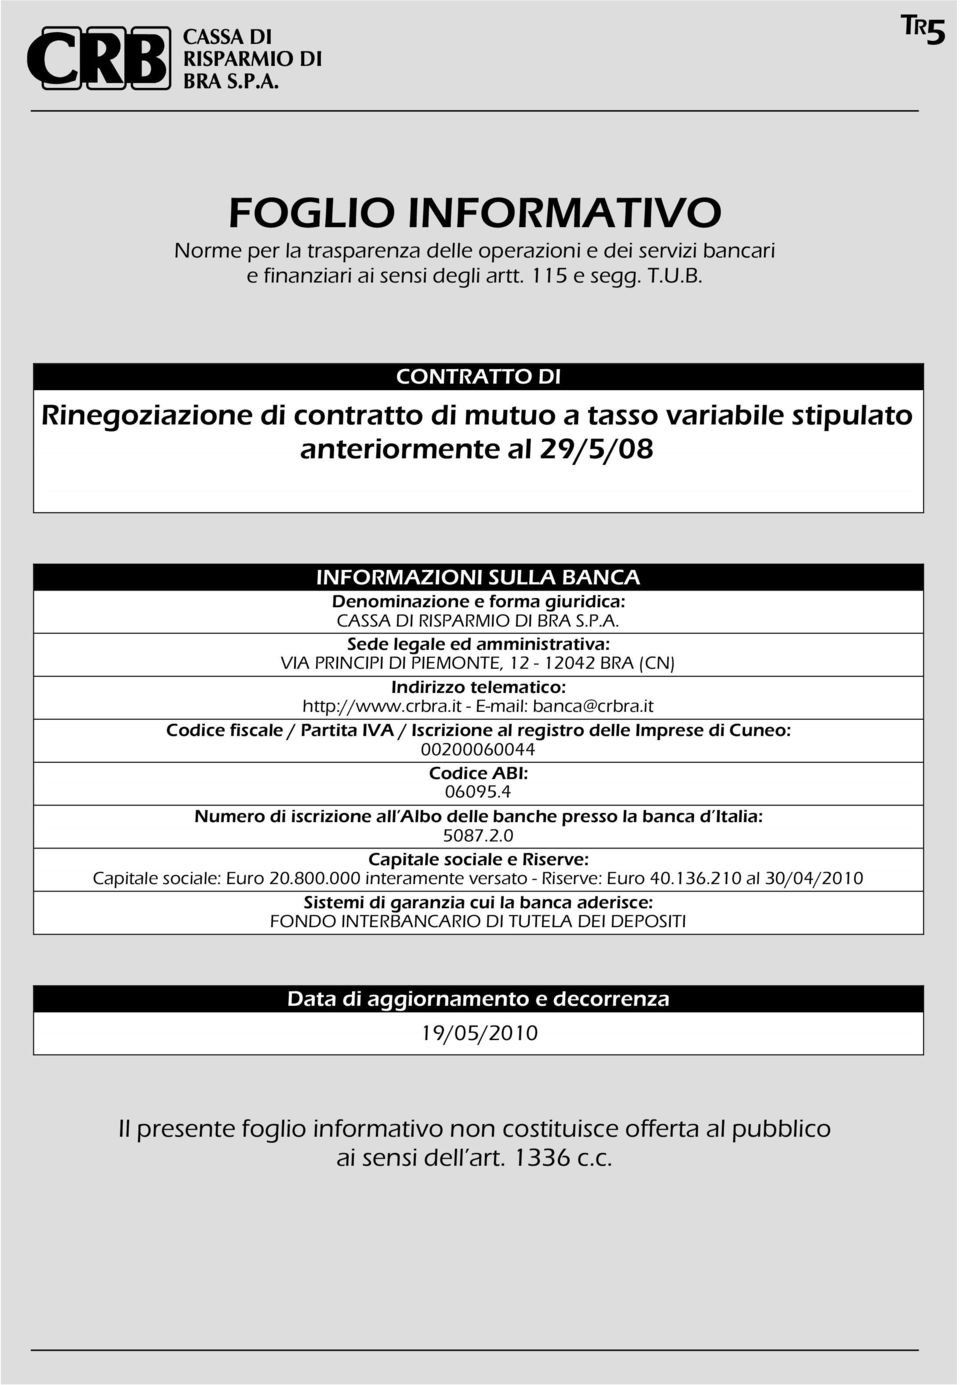 crbra.it - E-mail: banca@crbra.it Codice fiscale / Partita IVA / Iscrizione al registro delle Imprese di Cuneo: 00200060044 Codice ABI: 0609.